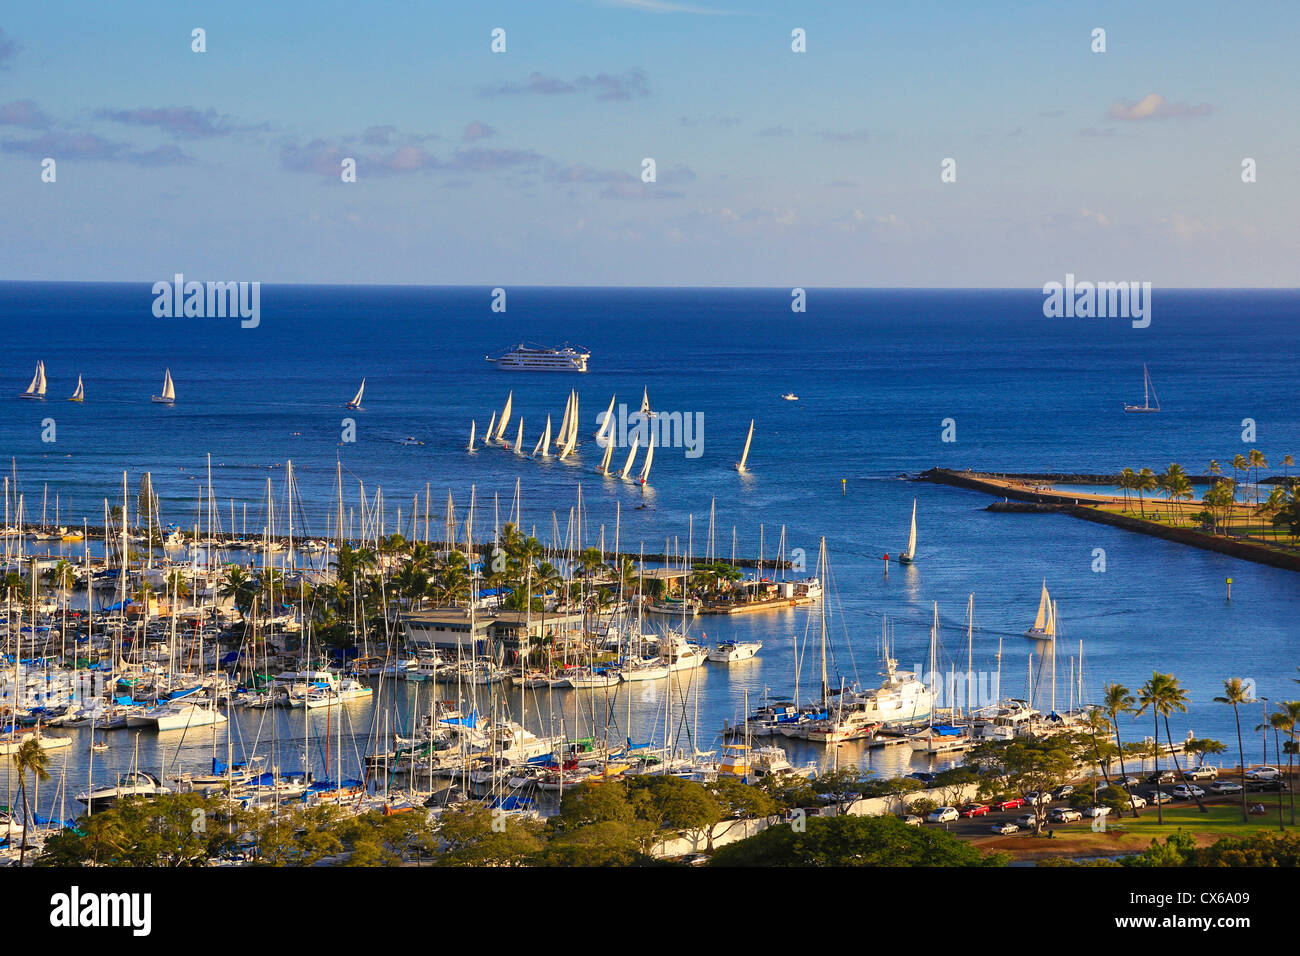 El puerto deportivo Ala Wai, Waikiki, Oahu, Hawai Foto de stock